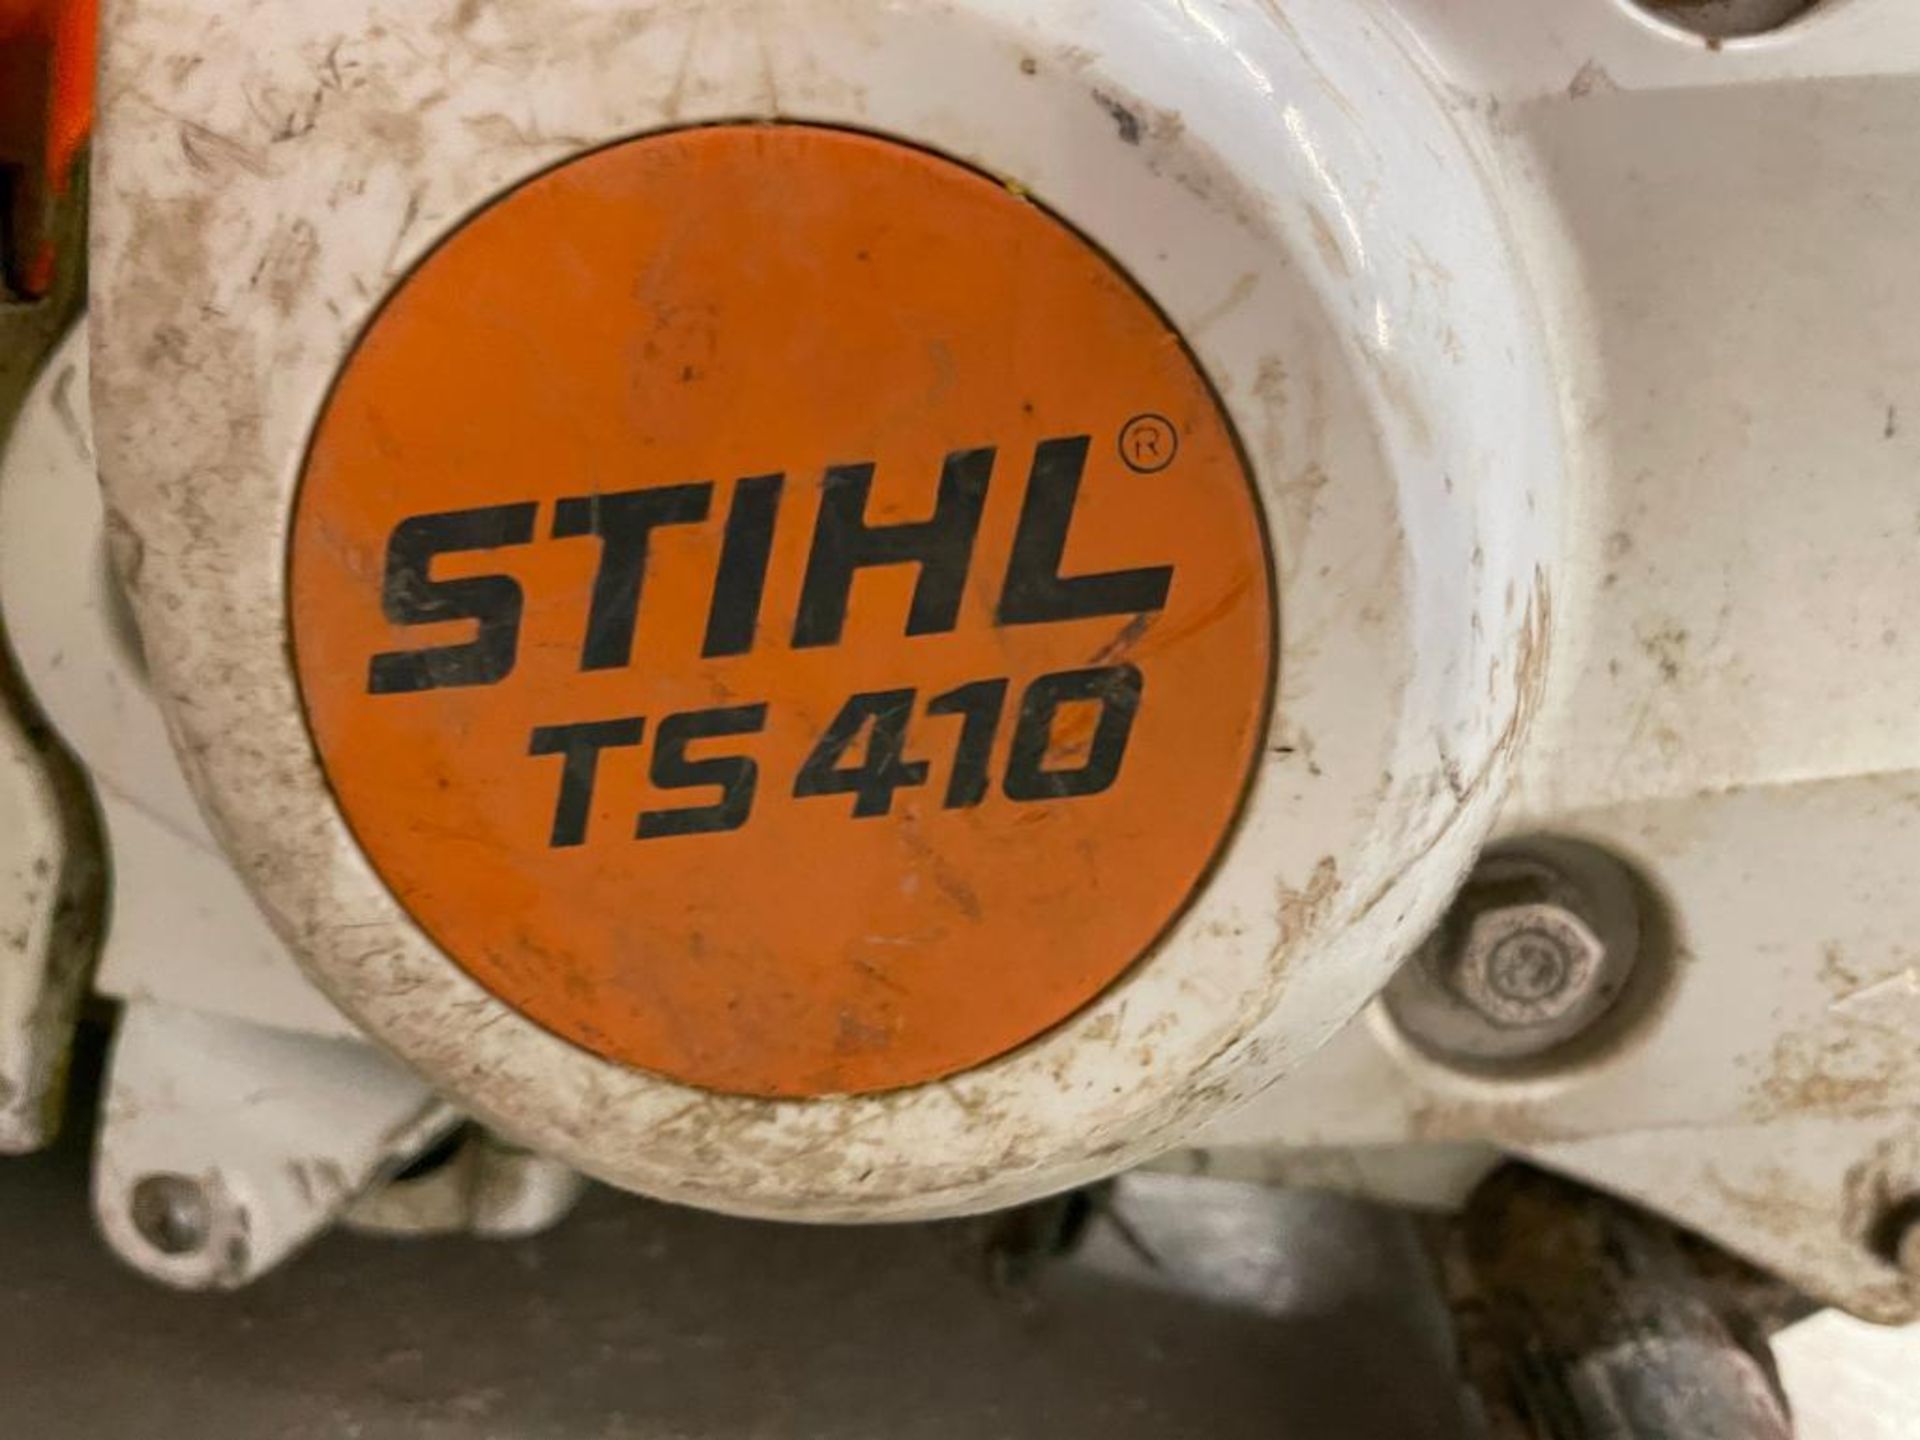 Stihl TS410 Gas Cut-Off Saw. - Image 3 of 3